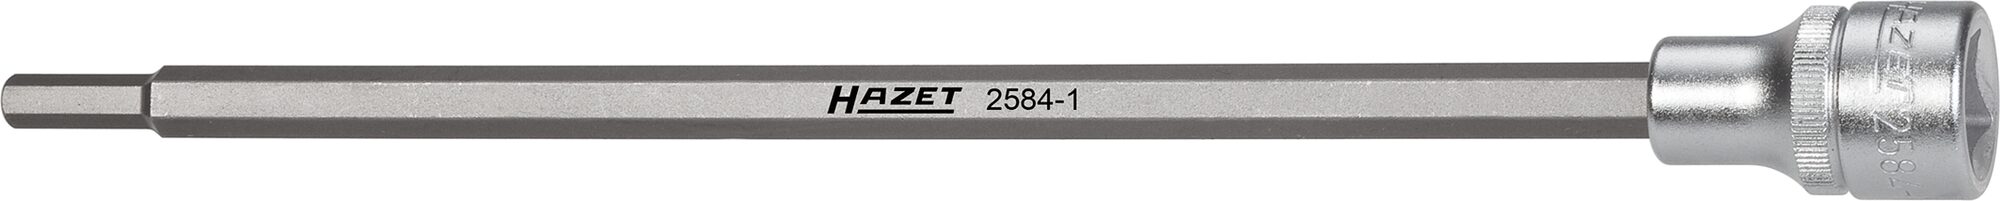 HAZET Saugrohr Schraubendreher-Steckschlüsseleinsatz 2584-1 · Vierkant hohl 12,5 mm (1/2 Zoll) · Innen Sechskant Profil · 6 mm